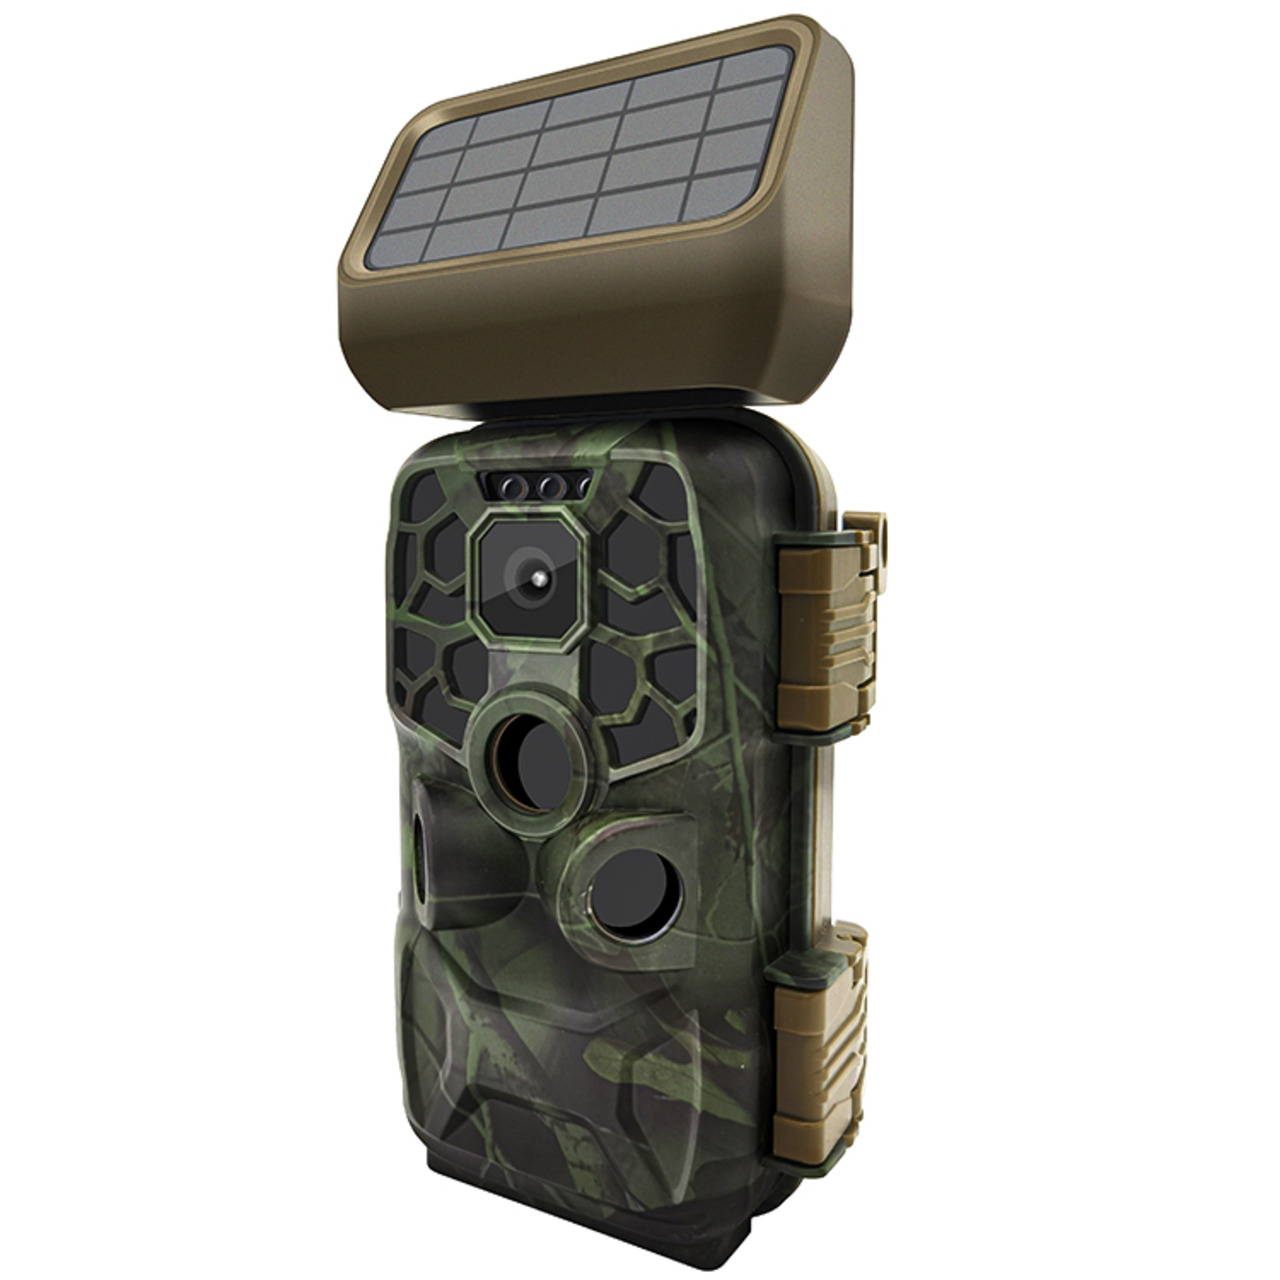 Braun Fotofalle - Wildkamera Scouting Cam BLACK400 WiFi SOLAR- 24 MP- IP56- Auslösezeit 0-4s 